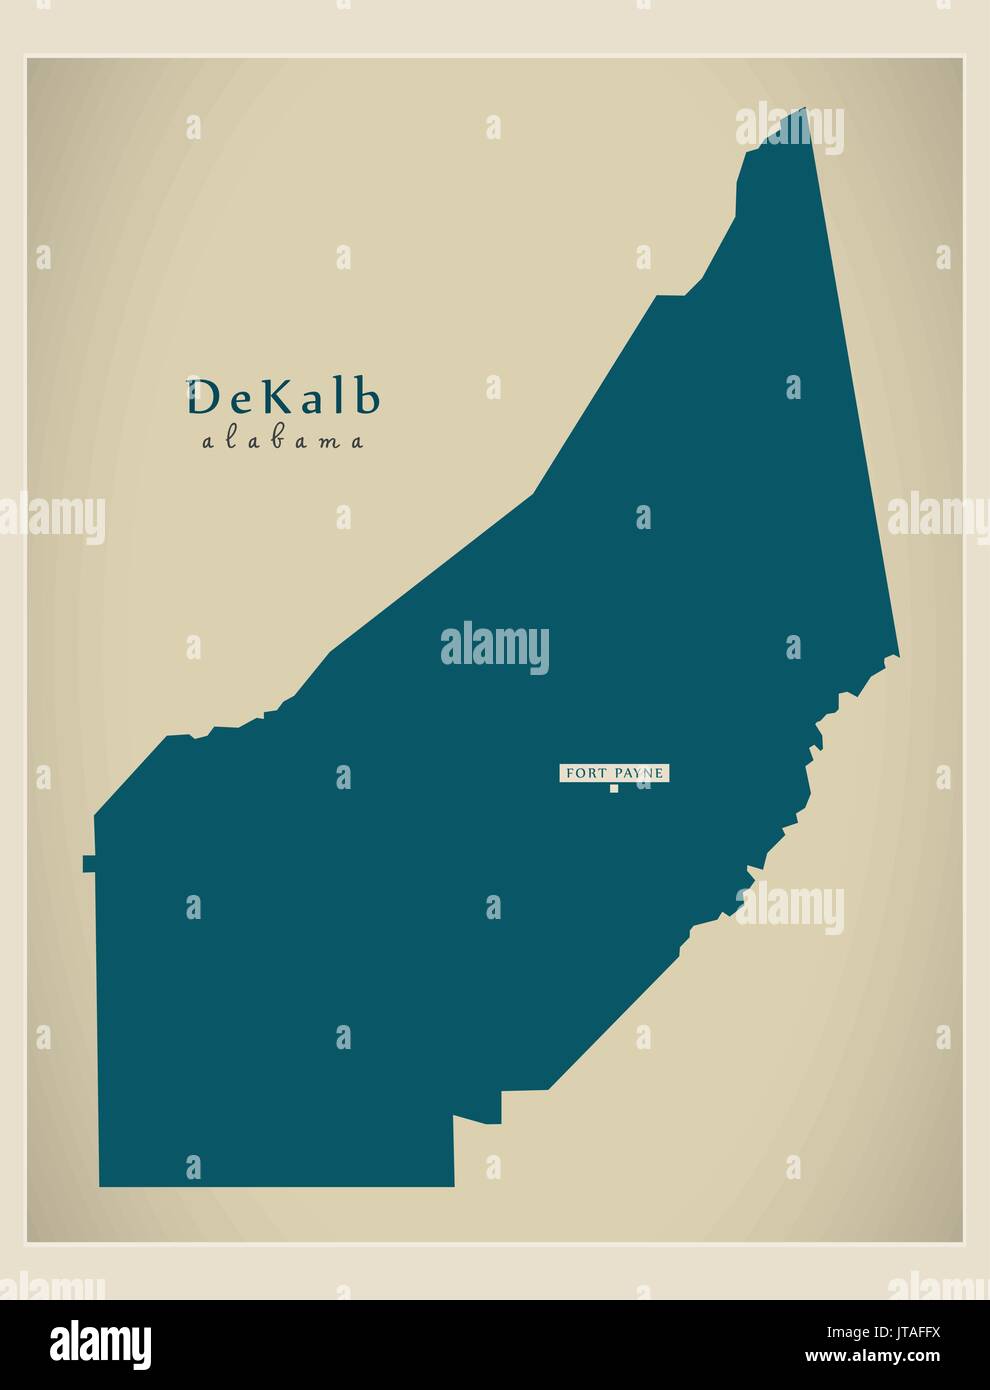 Mappa moderno - Alabama DeKalb county USA illustrazione Illustrazione Vettoriale